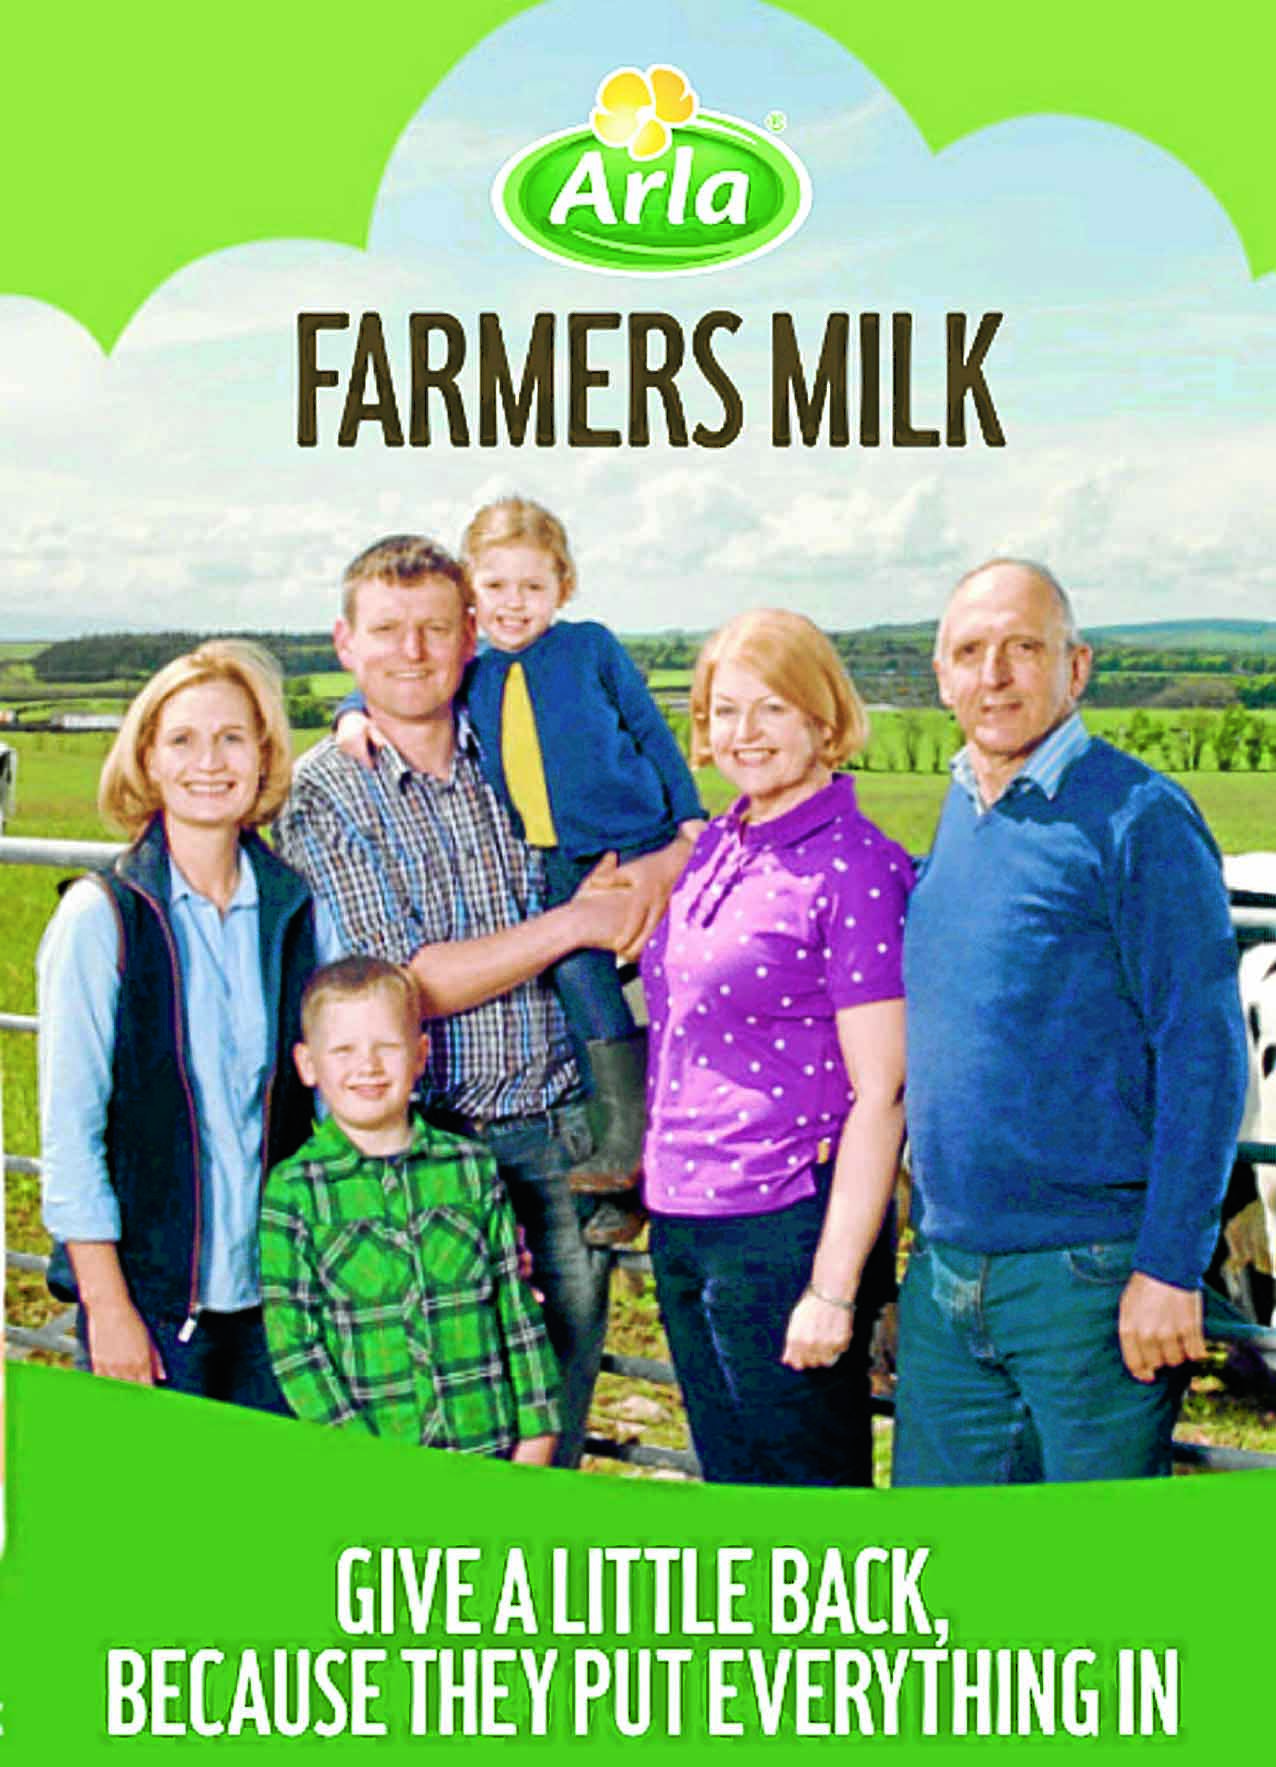 Farming family star in milk campaign